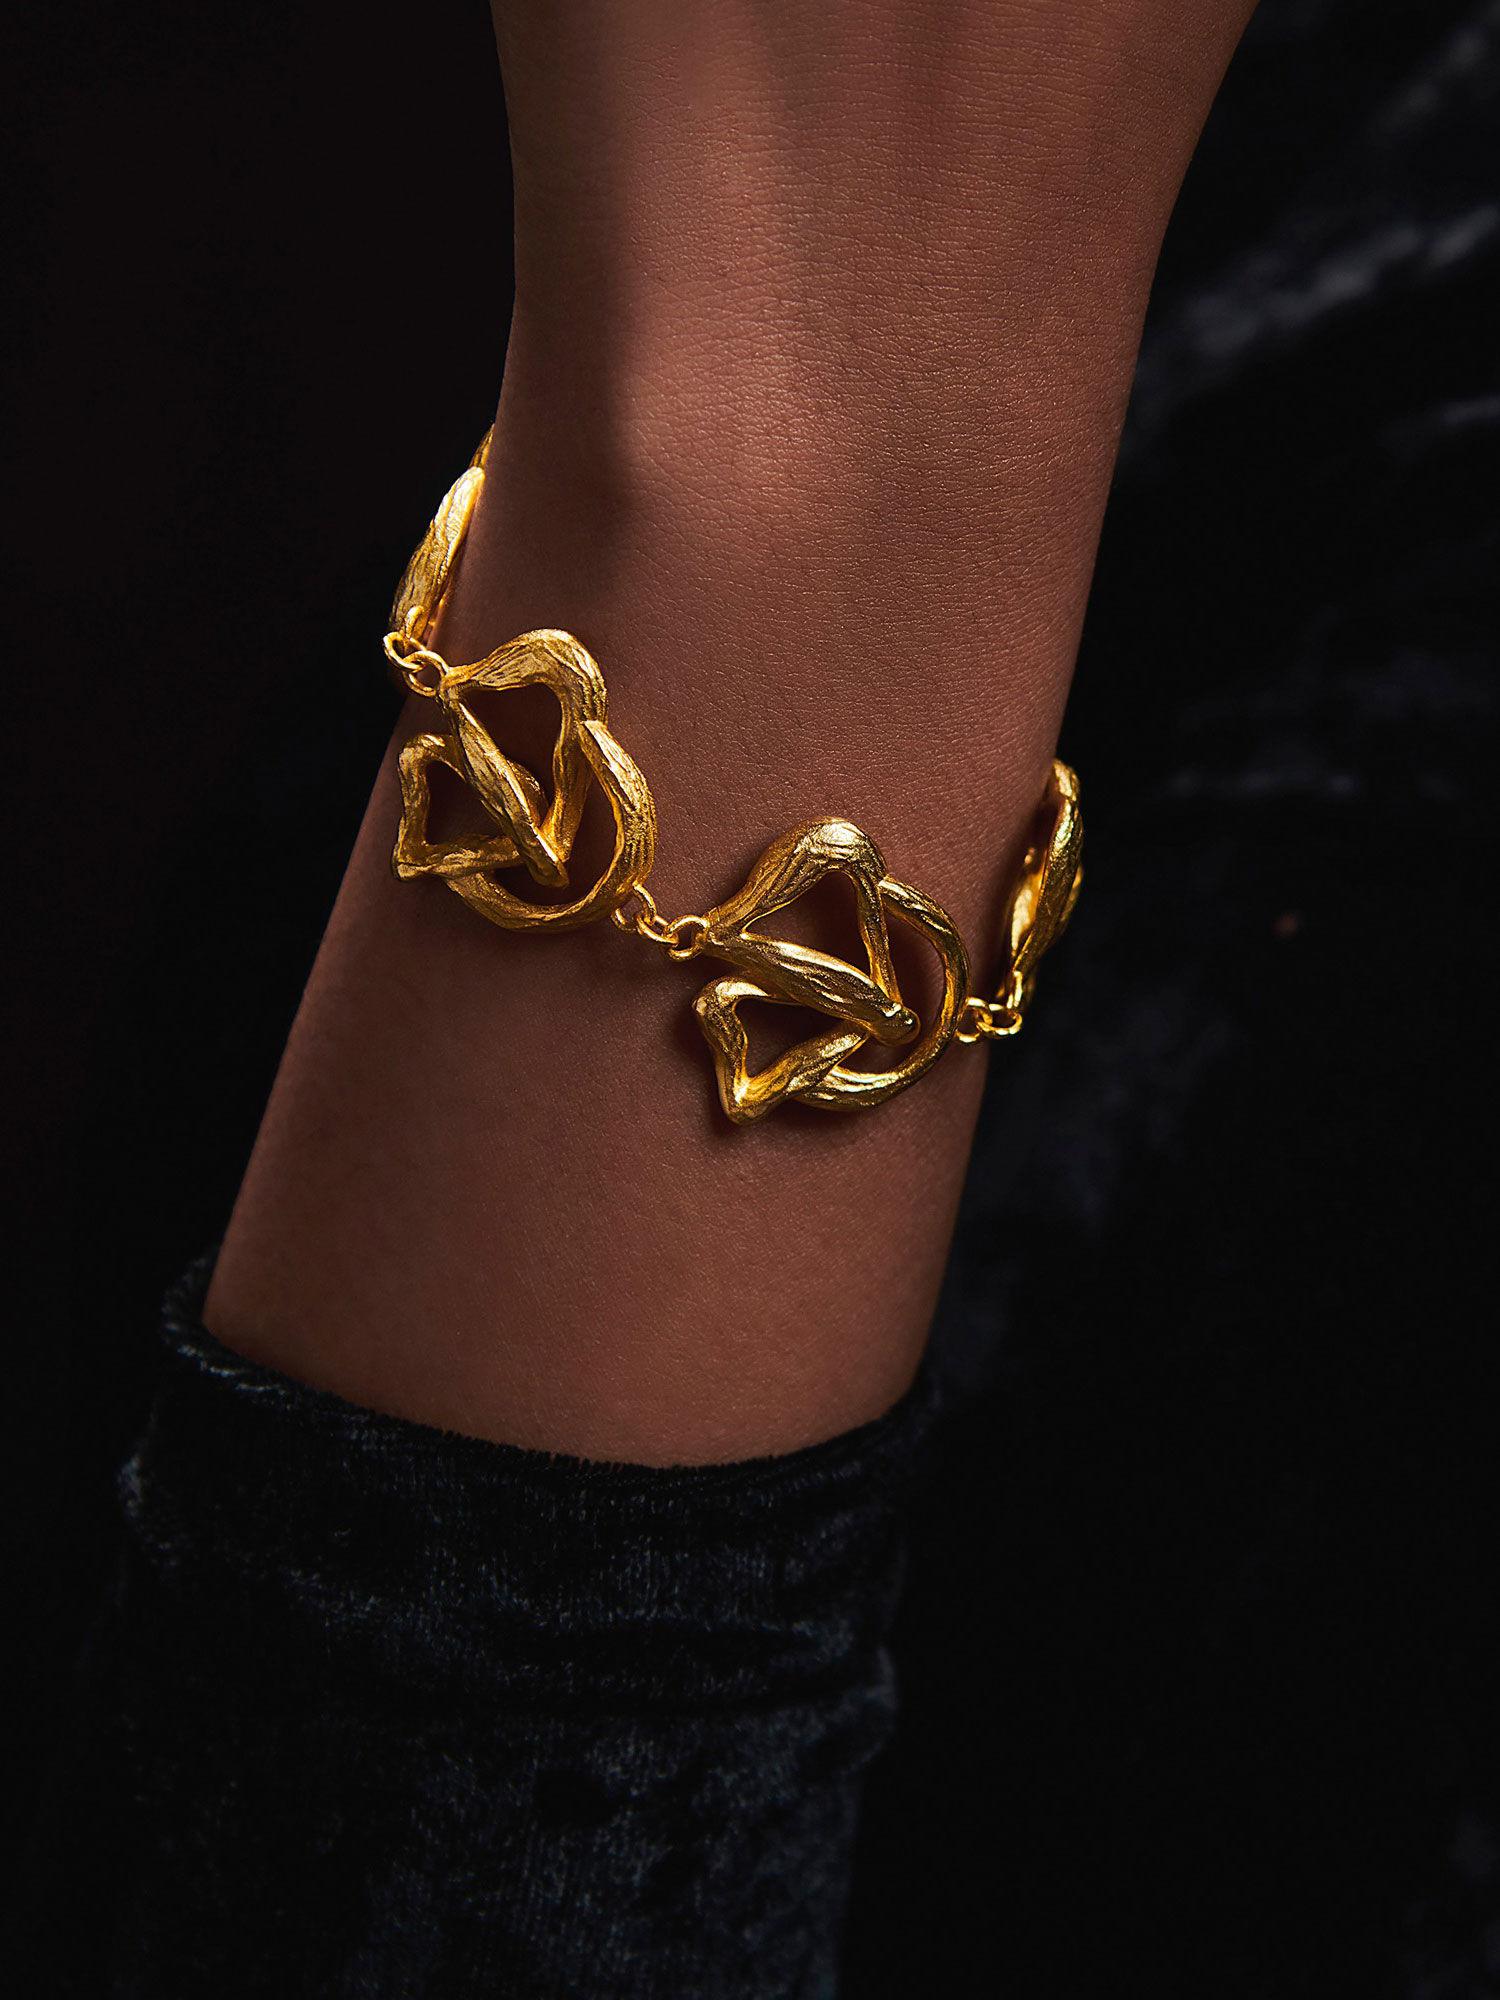 22k gold plated back to nature goldtone bracelet